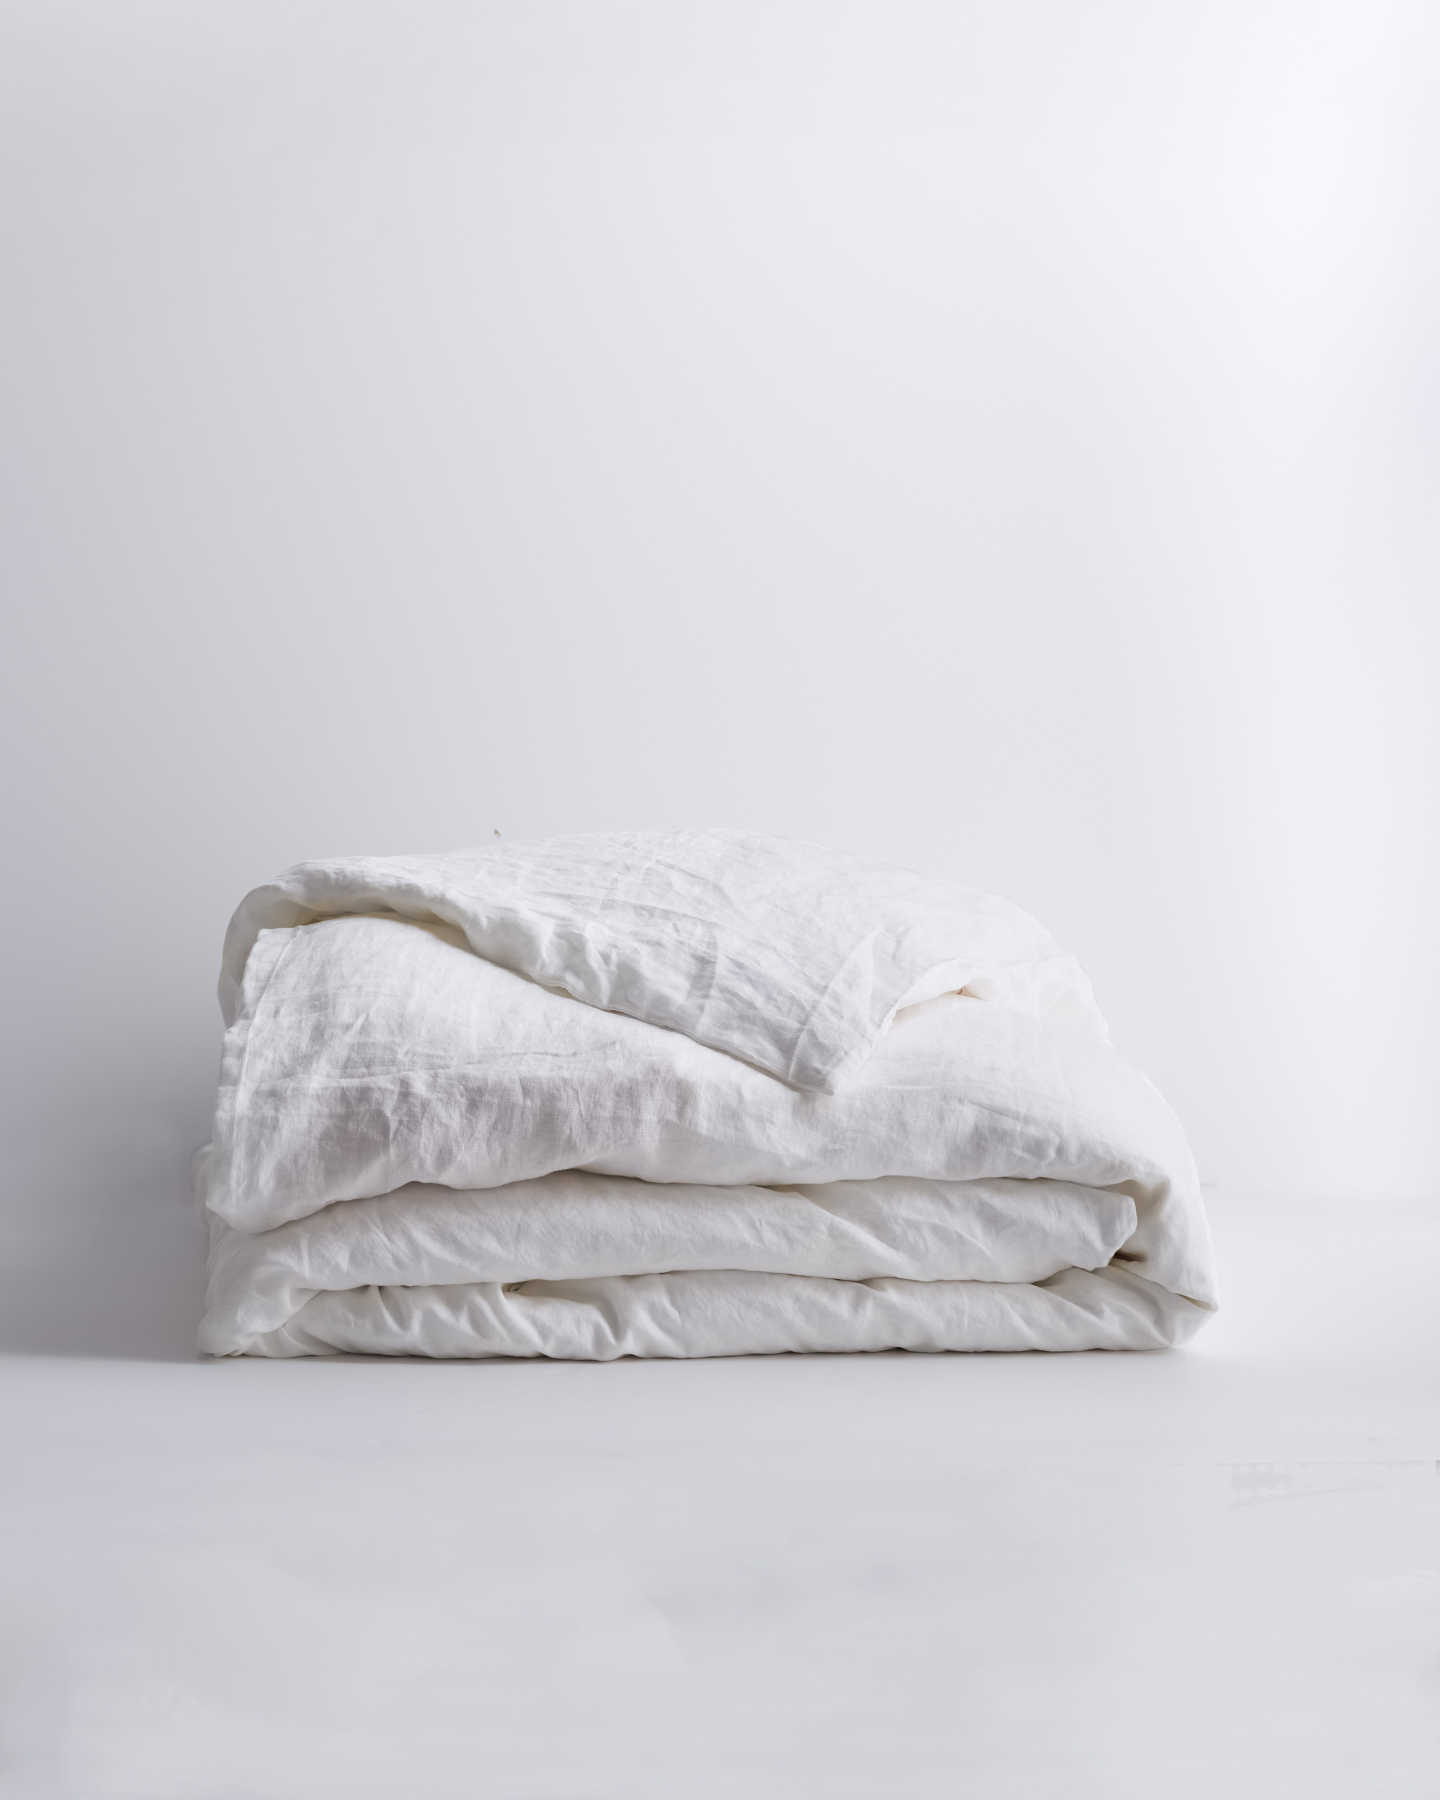 You May Also Like - European Linen Duvet Cover - White